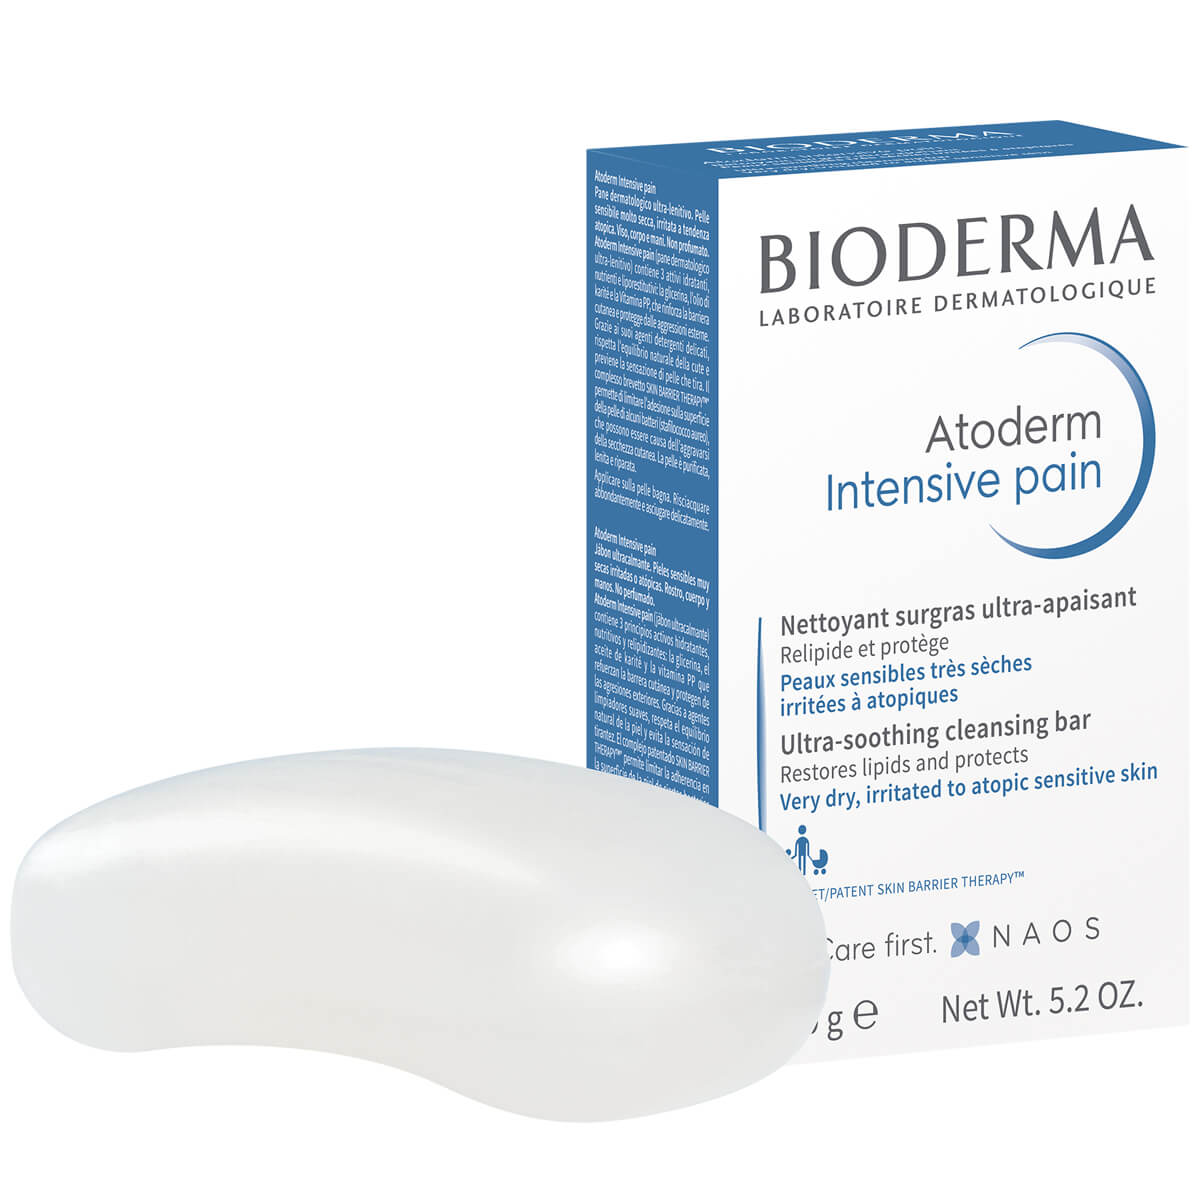 Atoderm Мыло Интенсив Питательное и увлажняющеедля сухой кожи для всей семьи, 150 гр, Bioderma